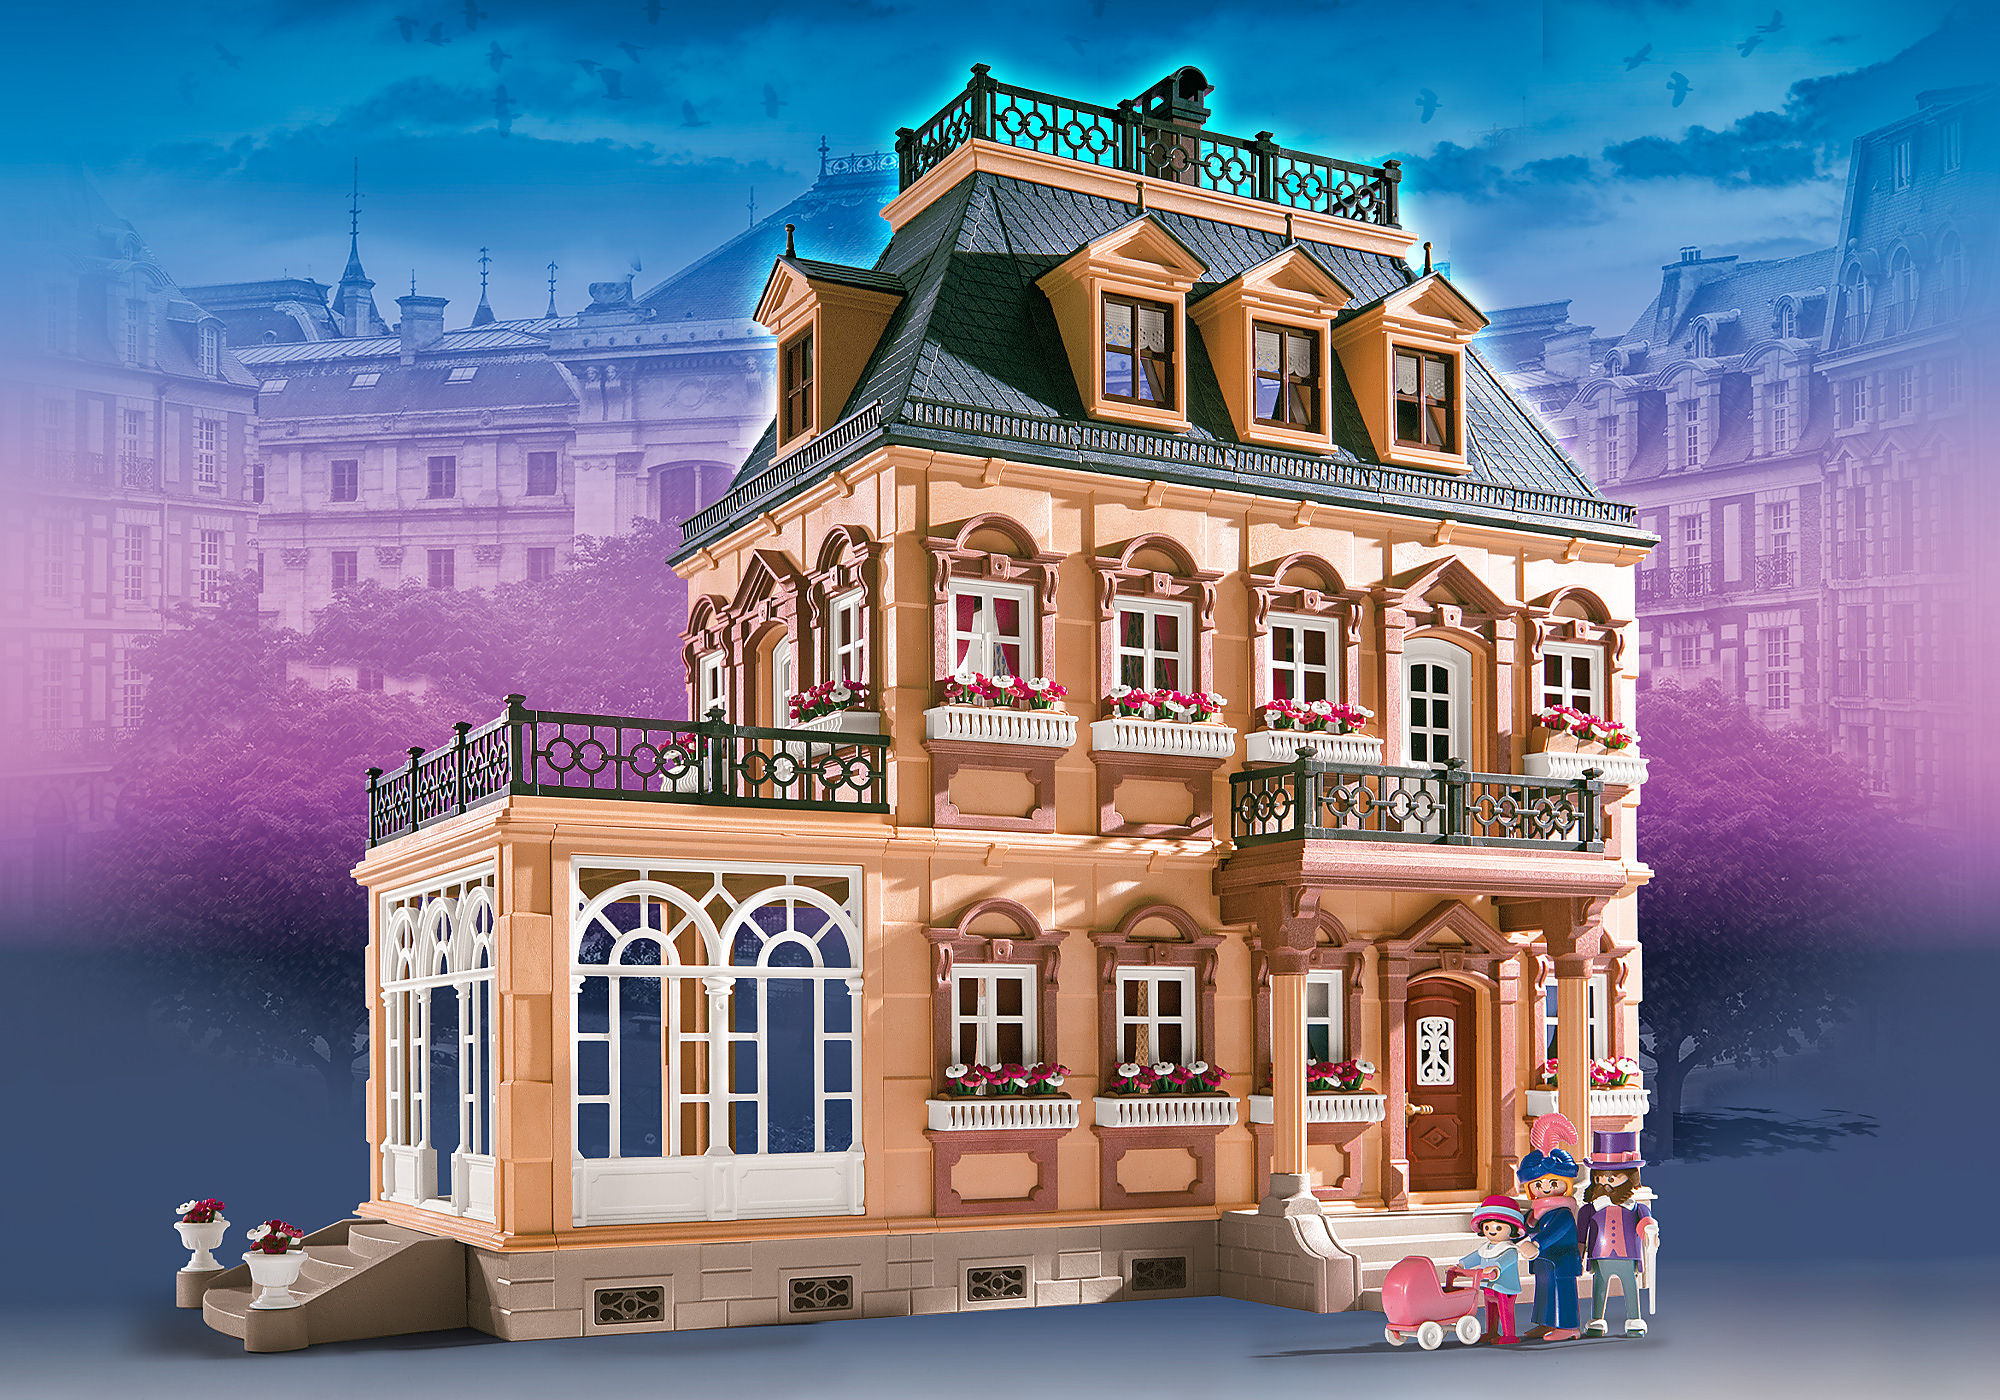 Extensions de la maison traditionnelle de Playmobil (Dollhouse) 